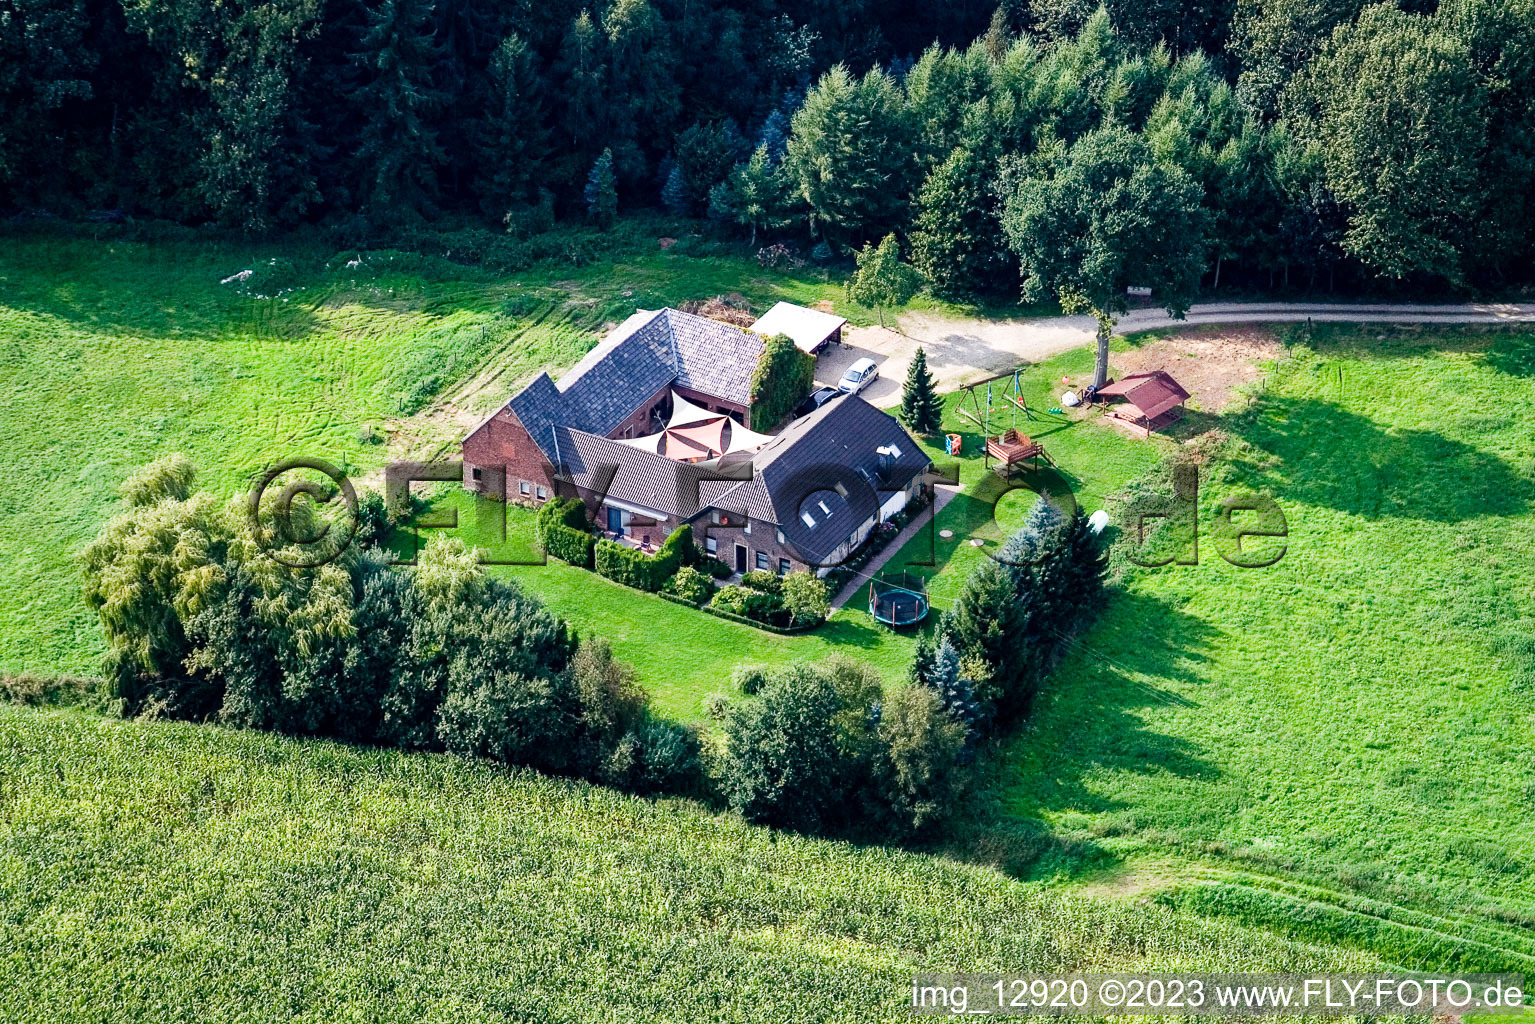 Aerial view of Between Kerken and Limburg in Kerken in the state North Rhine-Westphalia, Germany